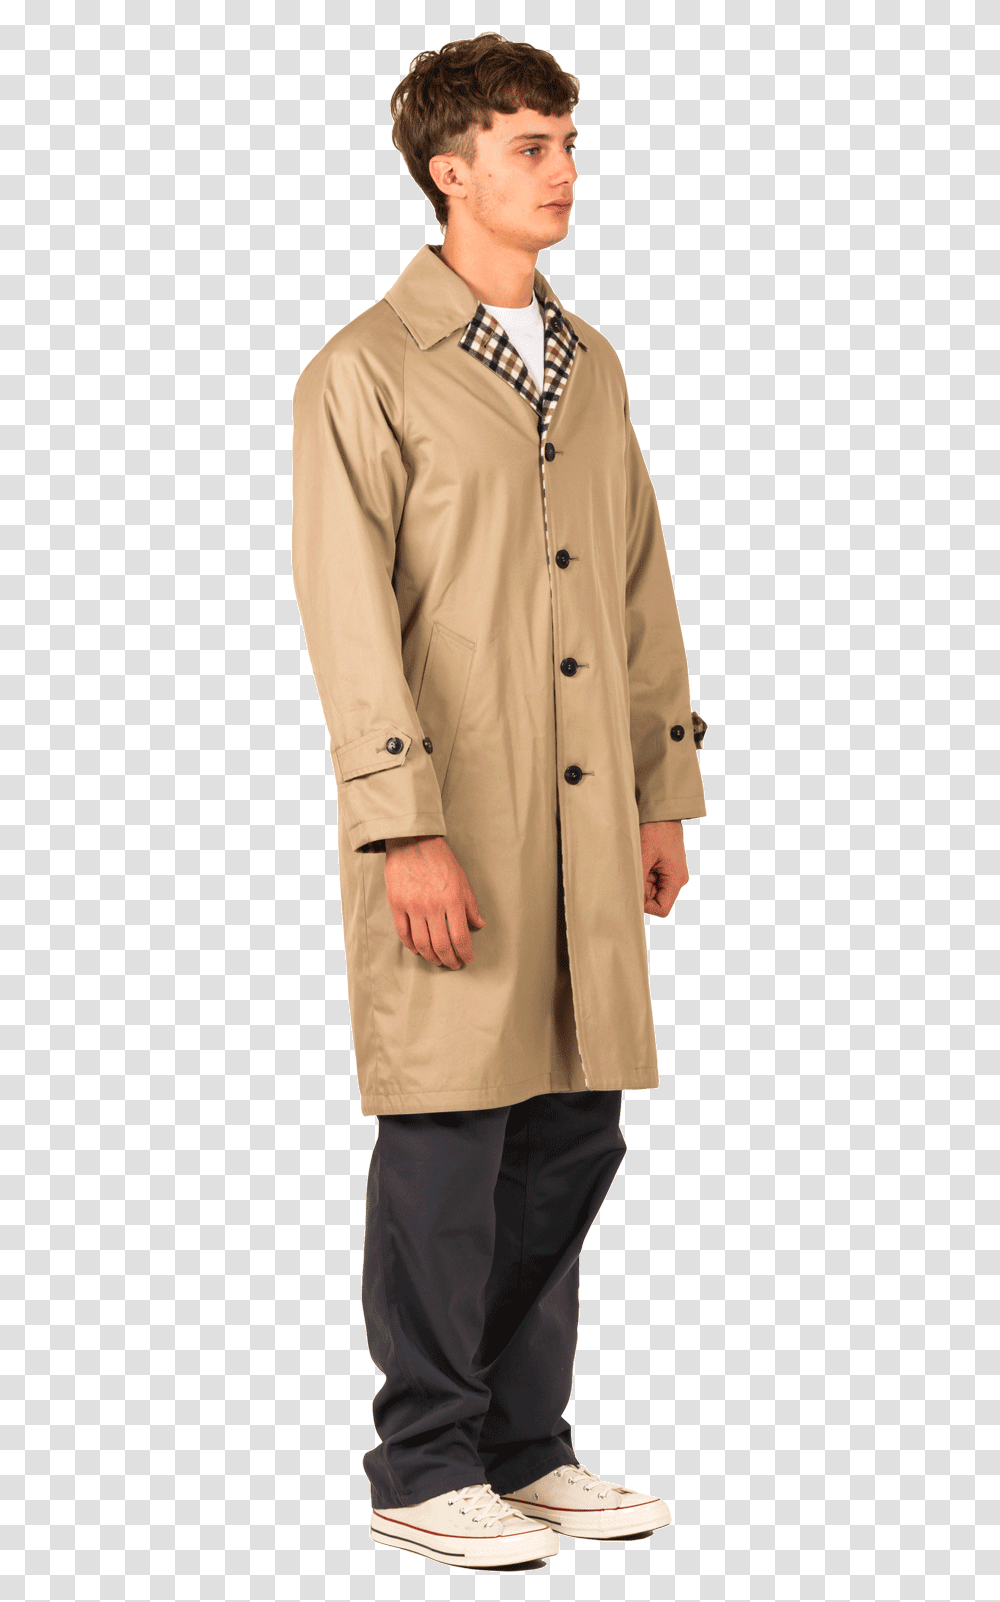 Gentleman, Apparel, Overcoat, Trench Coat Transparent Png